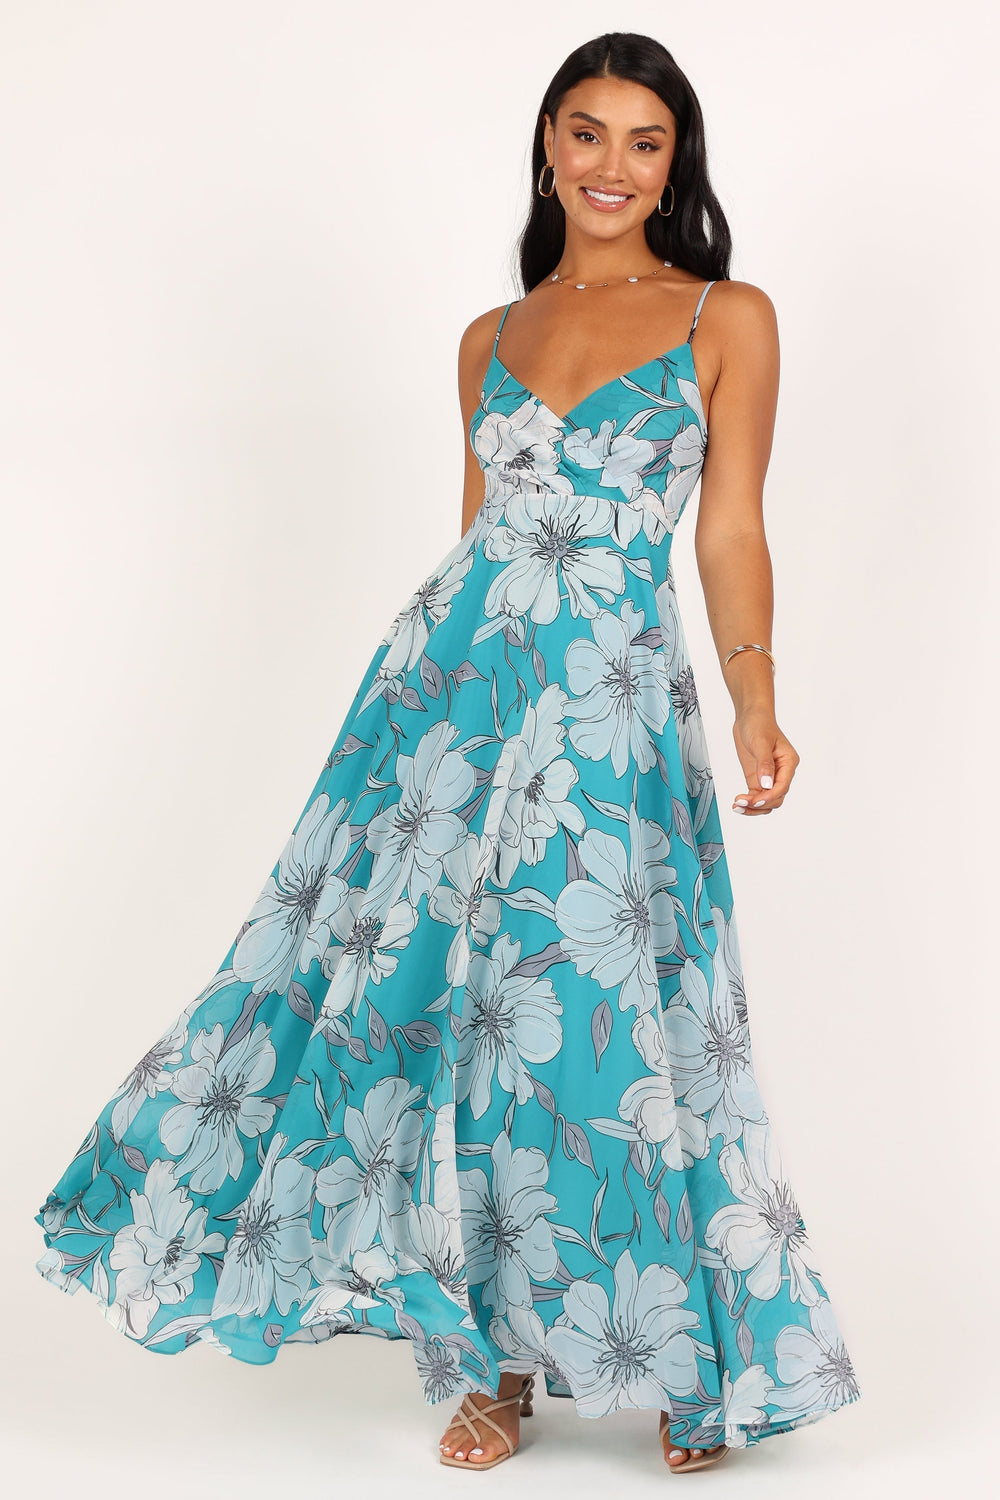 Flourish Maxi Dress - Blue Floral - Petal & Pup USA